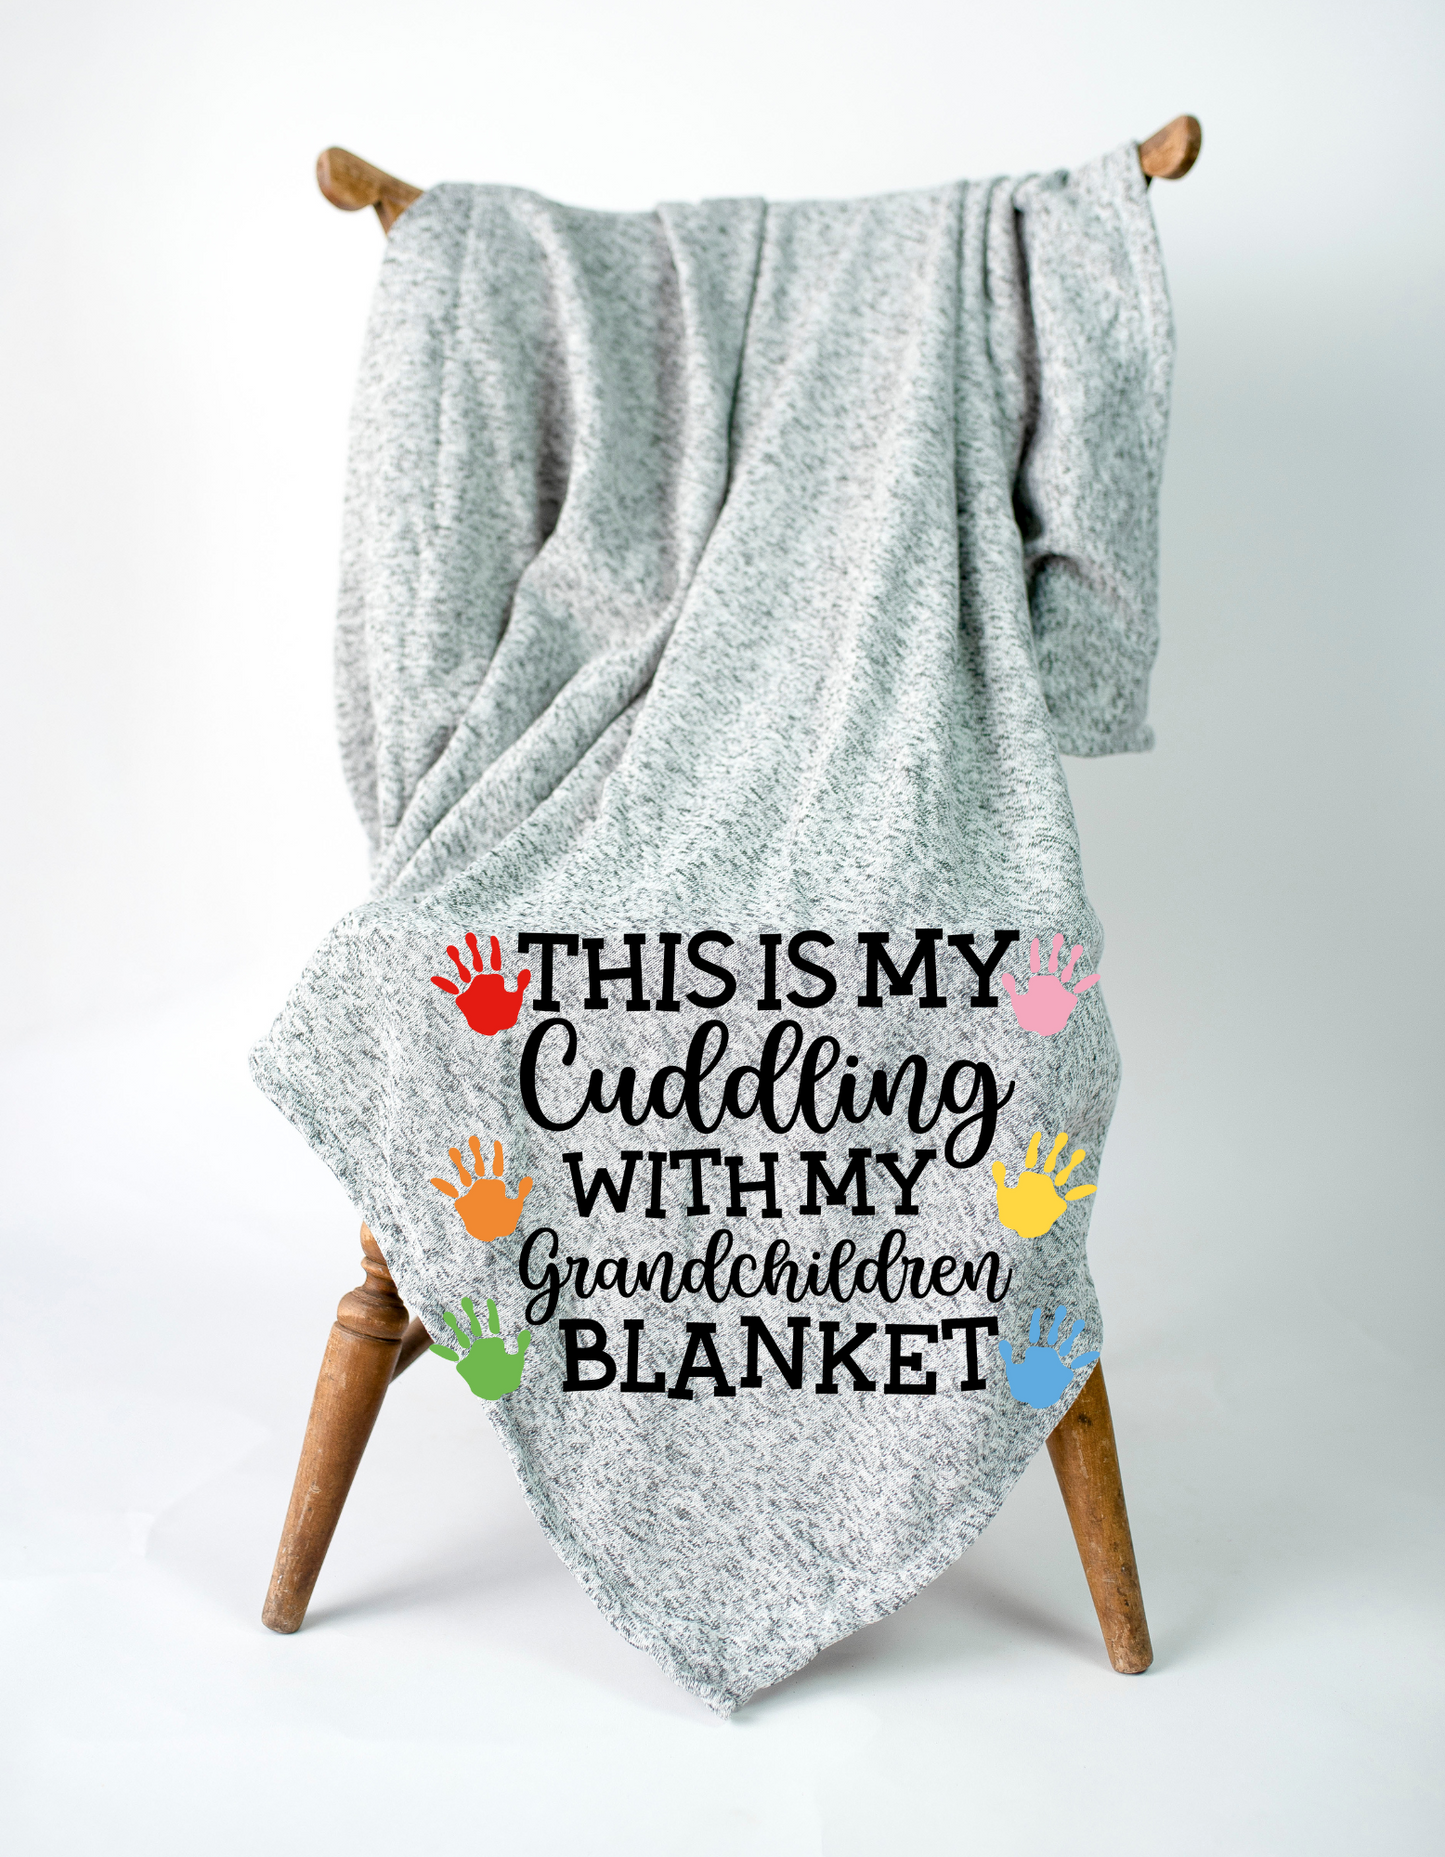 My Cuddling with My Grandchildren Blanket